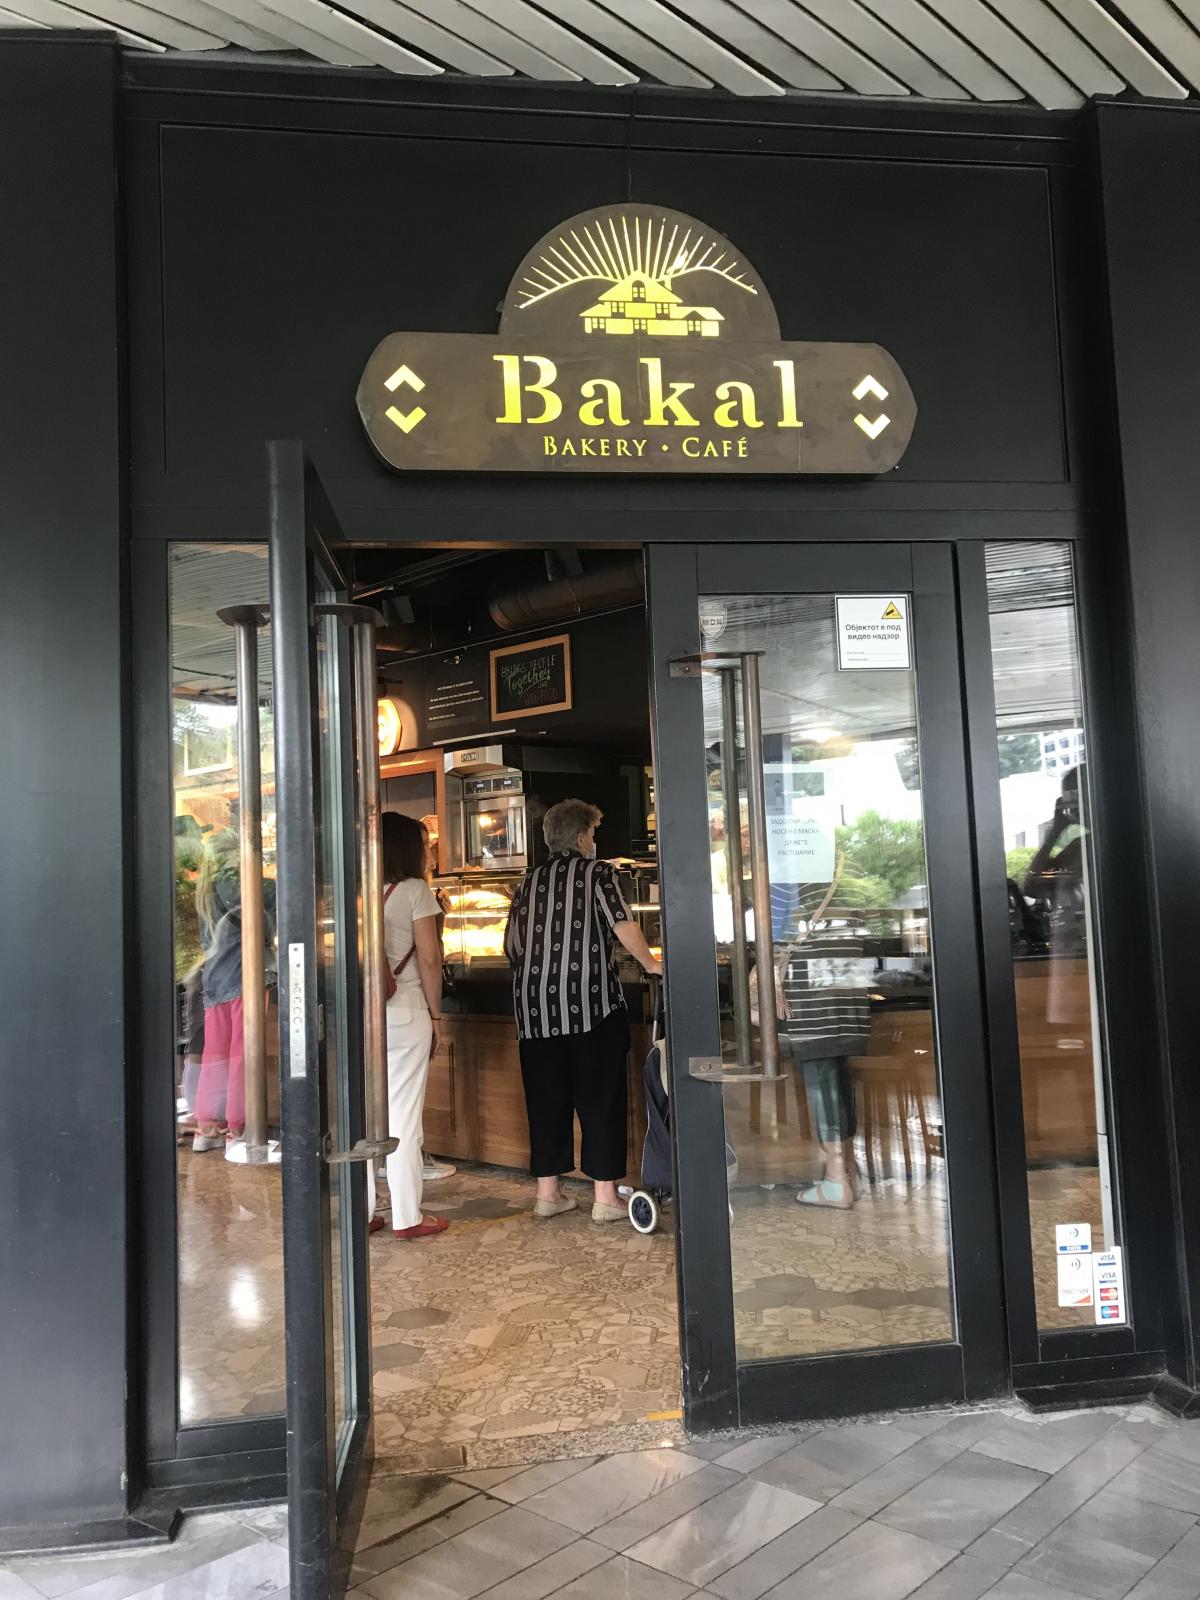 Местная пекарня Bakal / фото Ольга Робейко, УНИАН